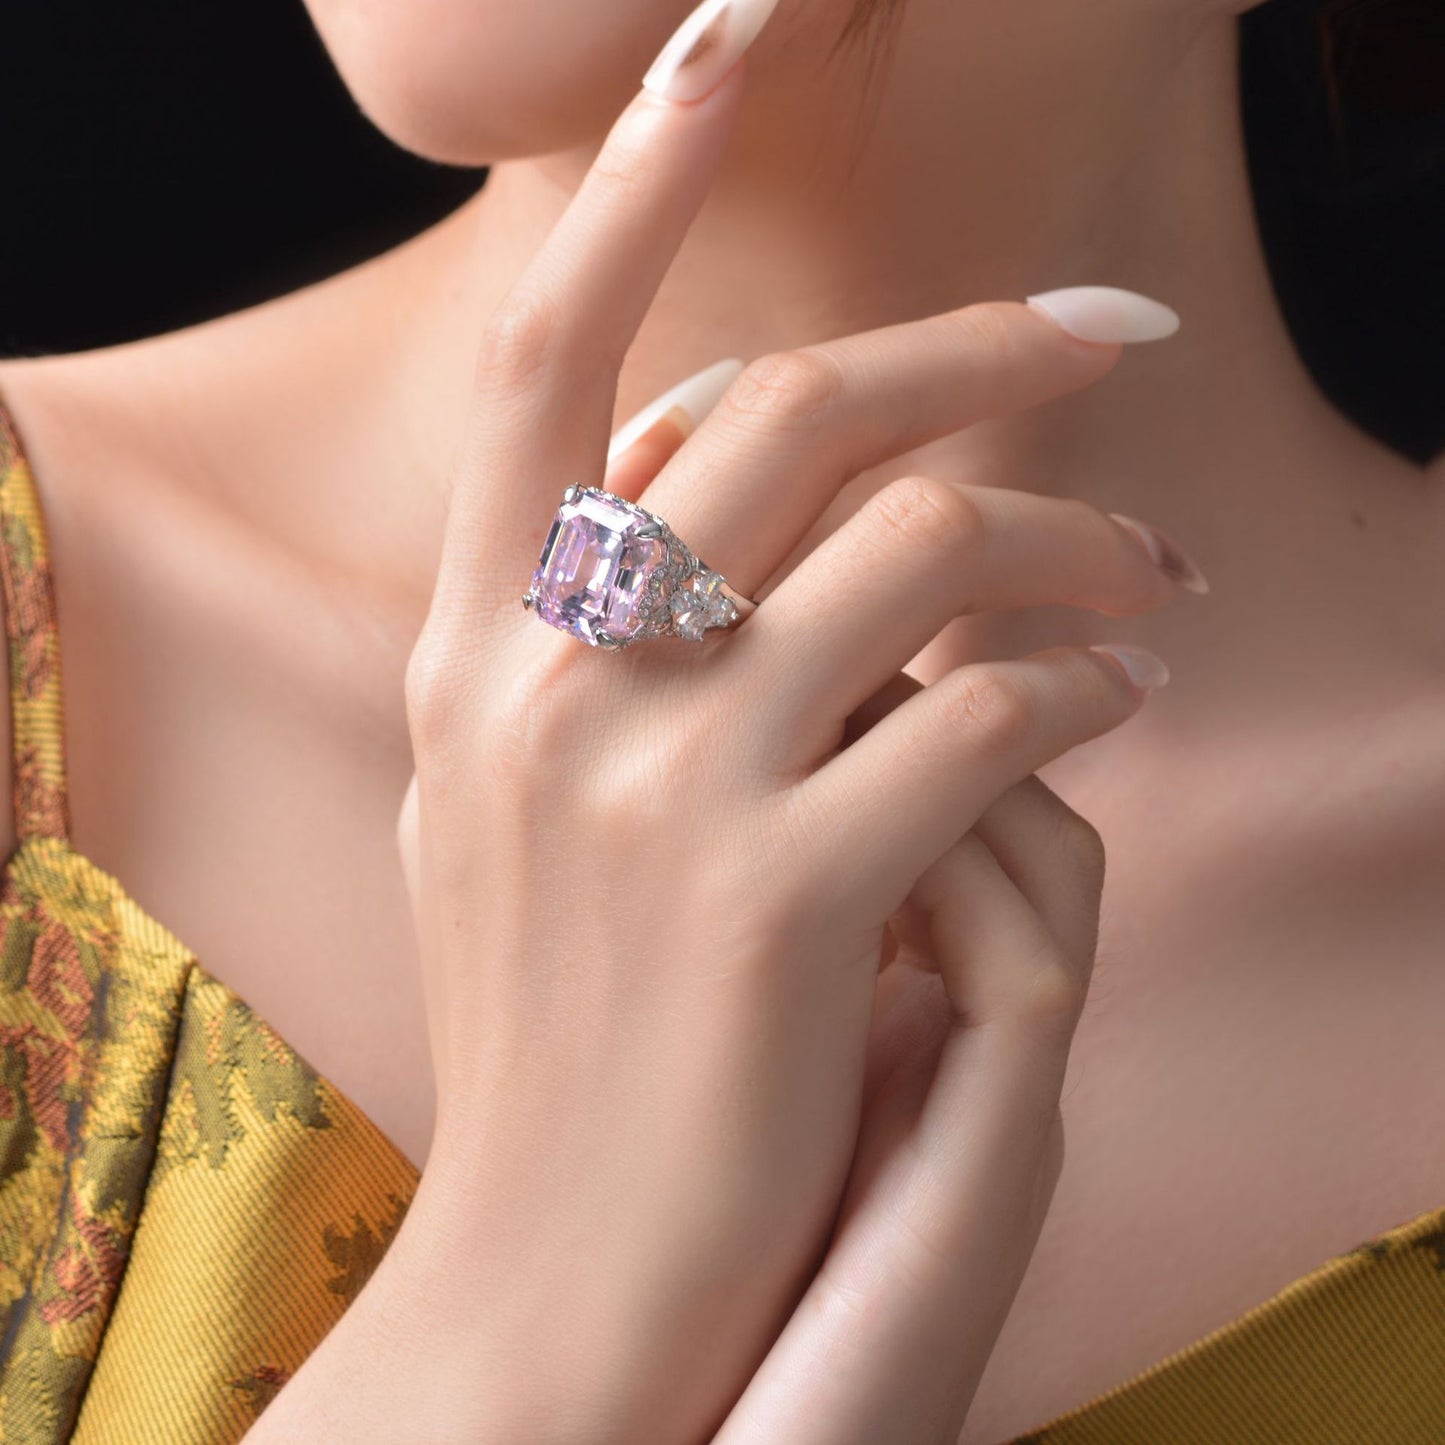 Kunzite Asscher Pink Bridal Ring R1570